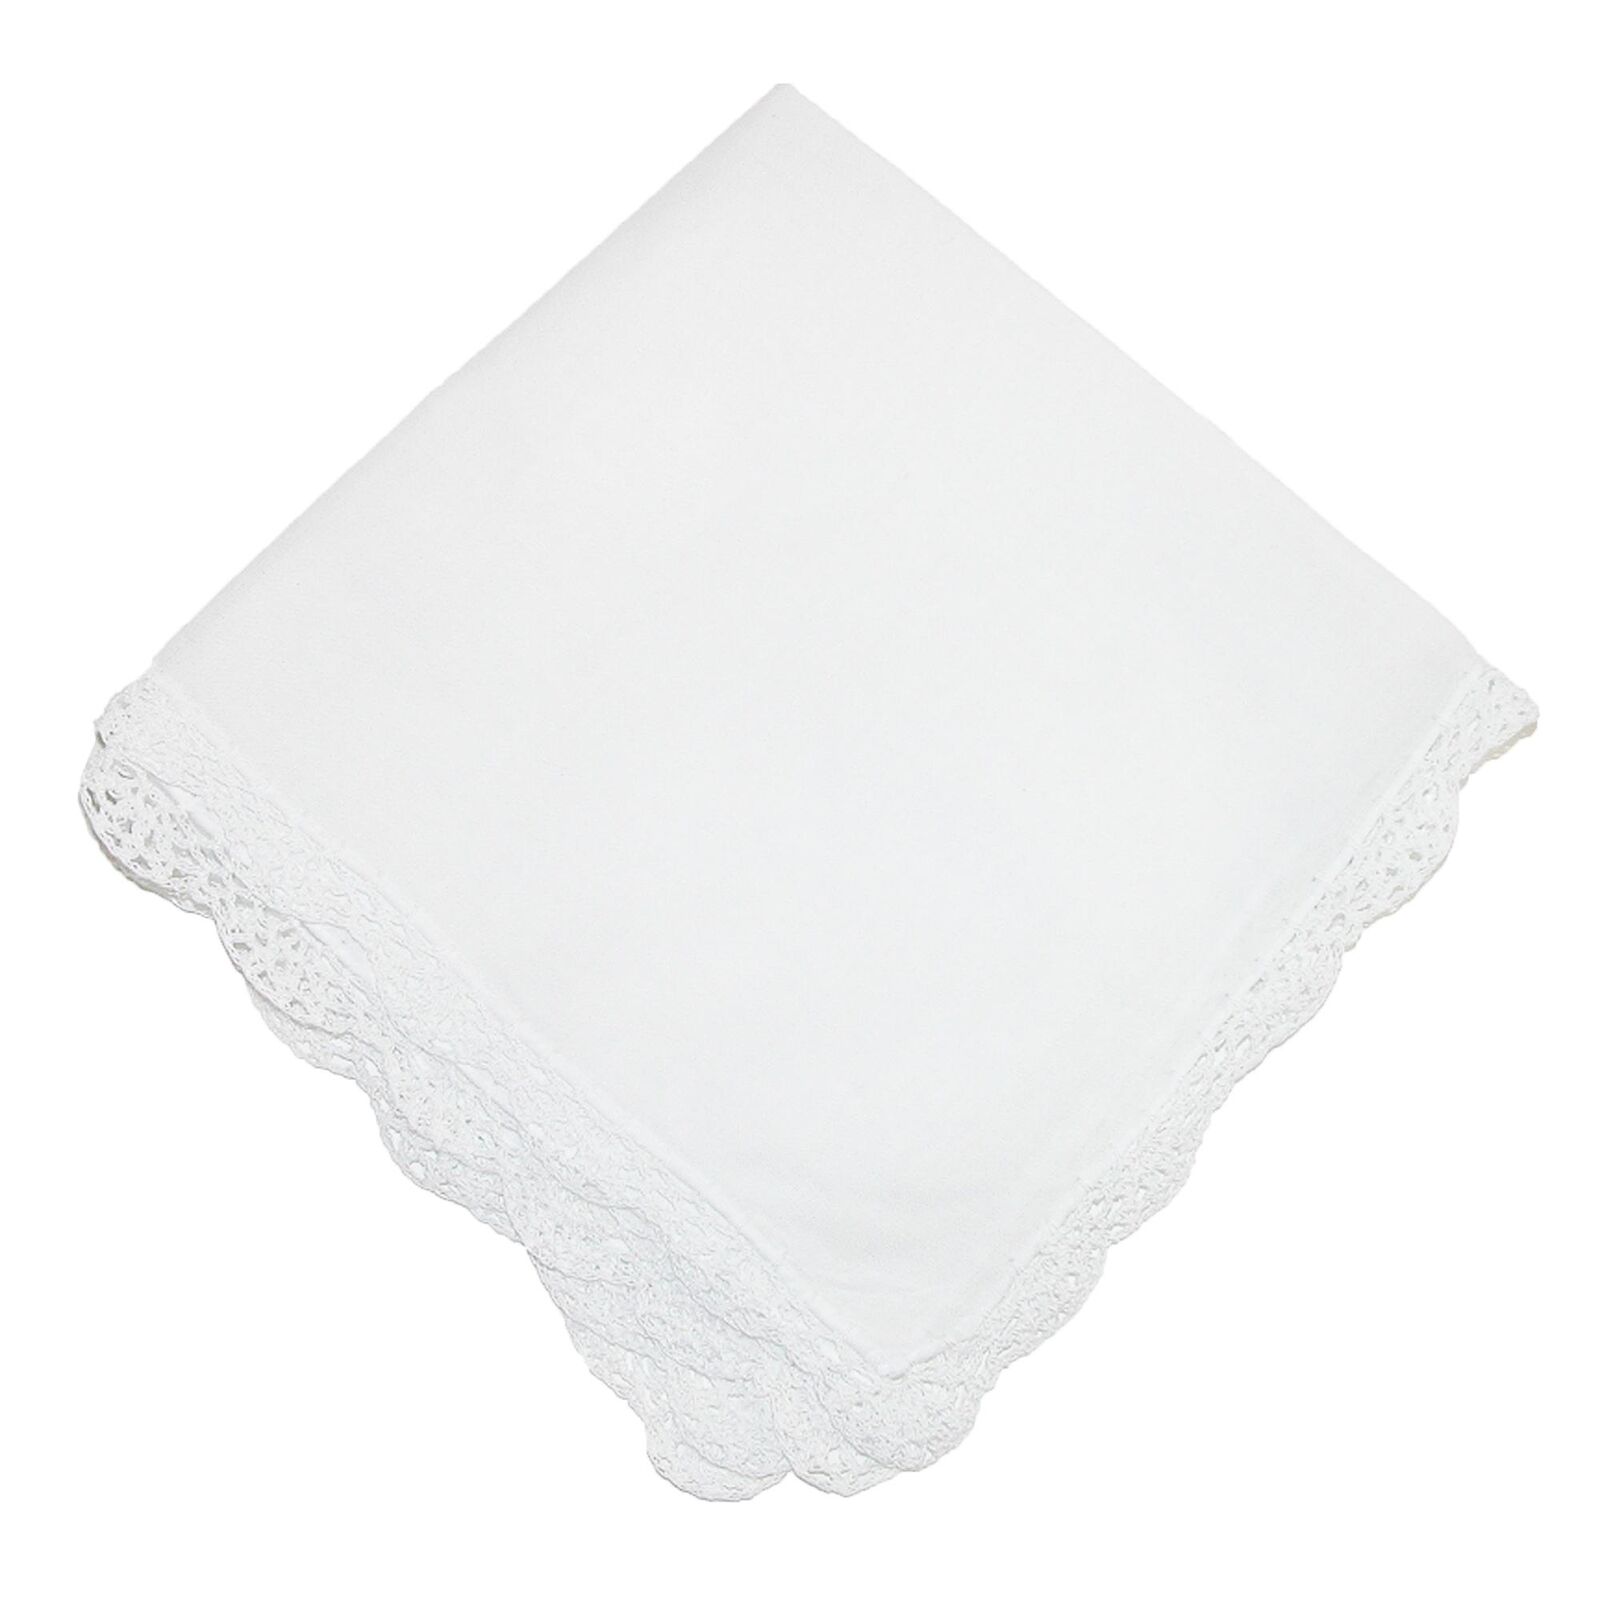 New CTM Women's Cotton Bonnie Lace Handkerchief